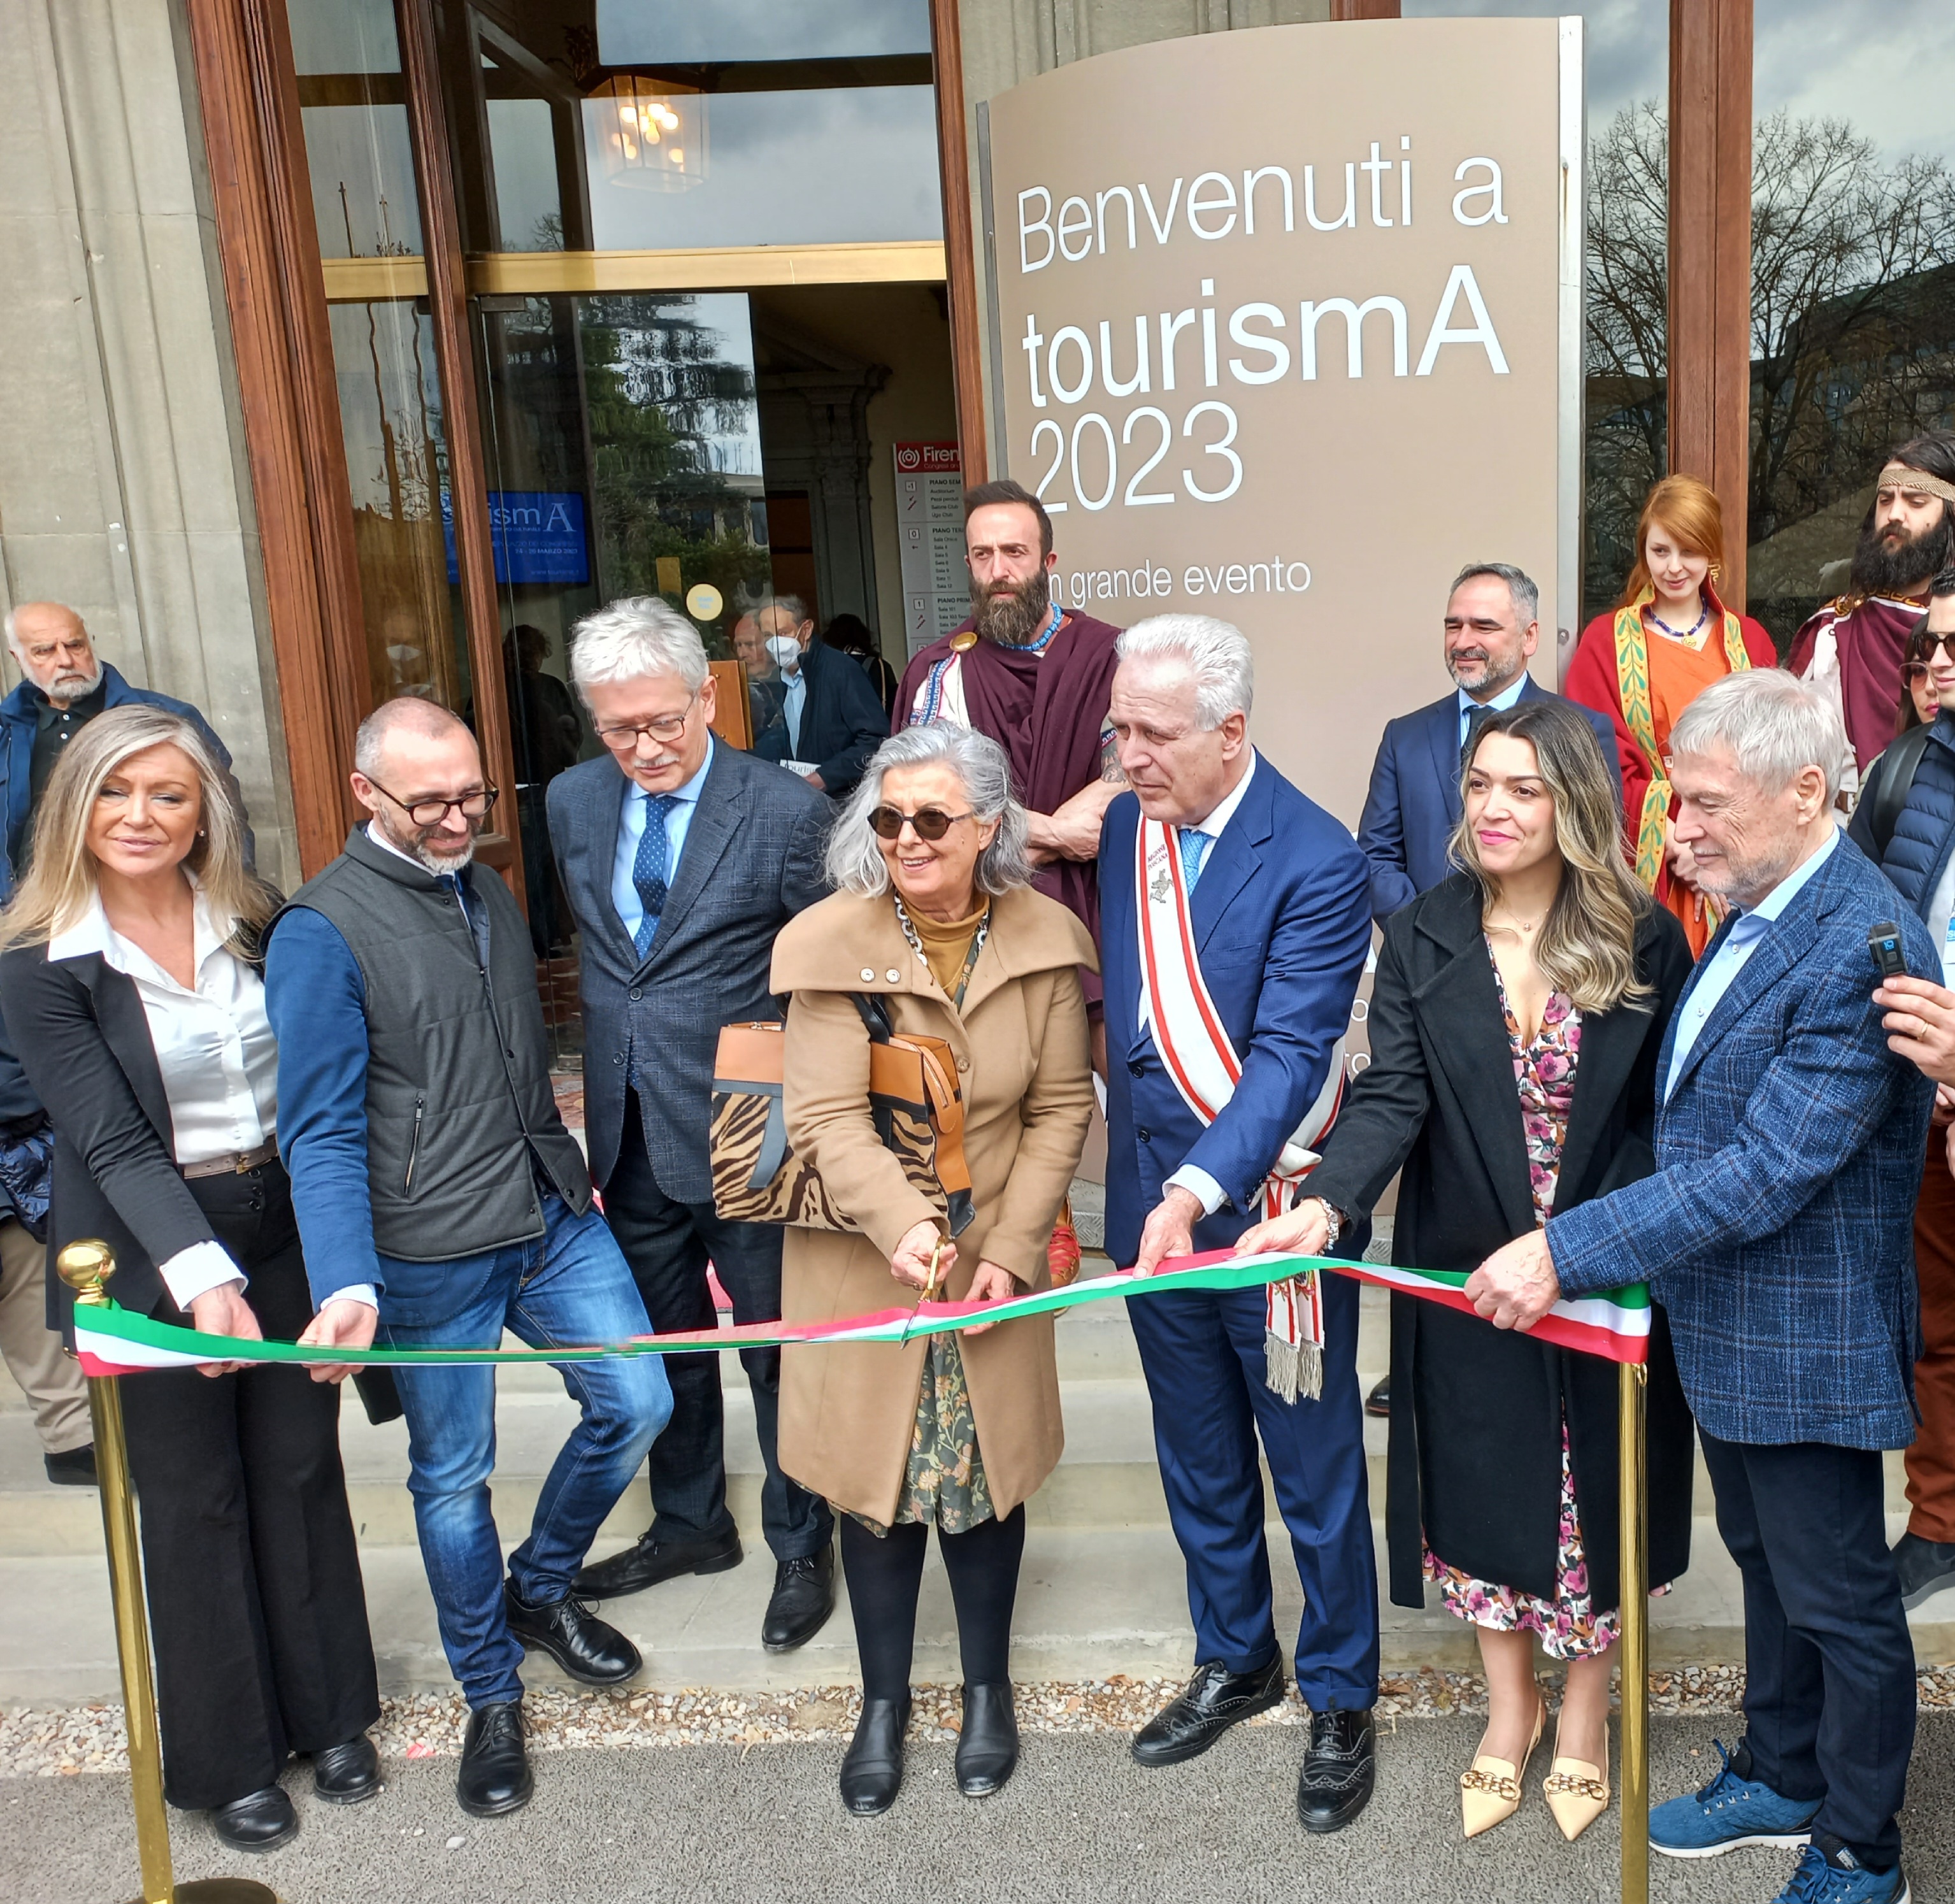 tourismA 2023, è soprattutto la ‘Toscana diffusa’ a trainare la ripr...